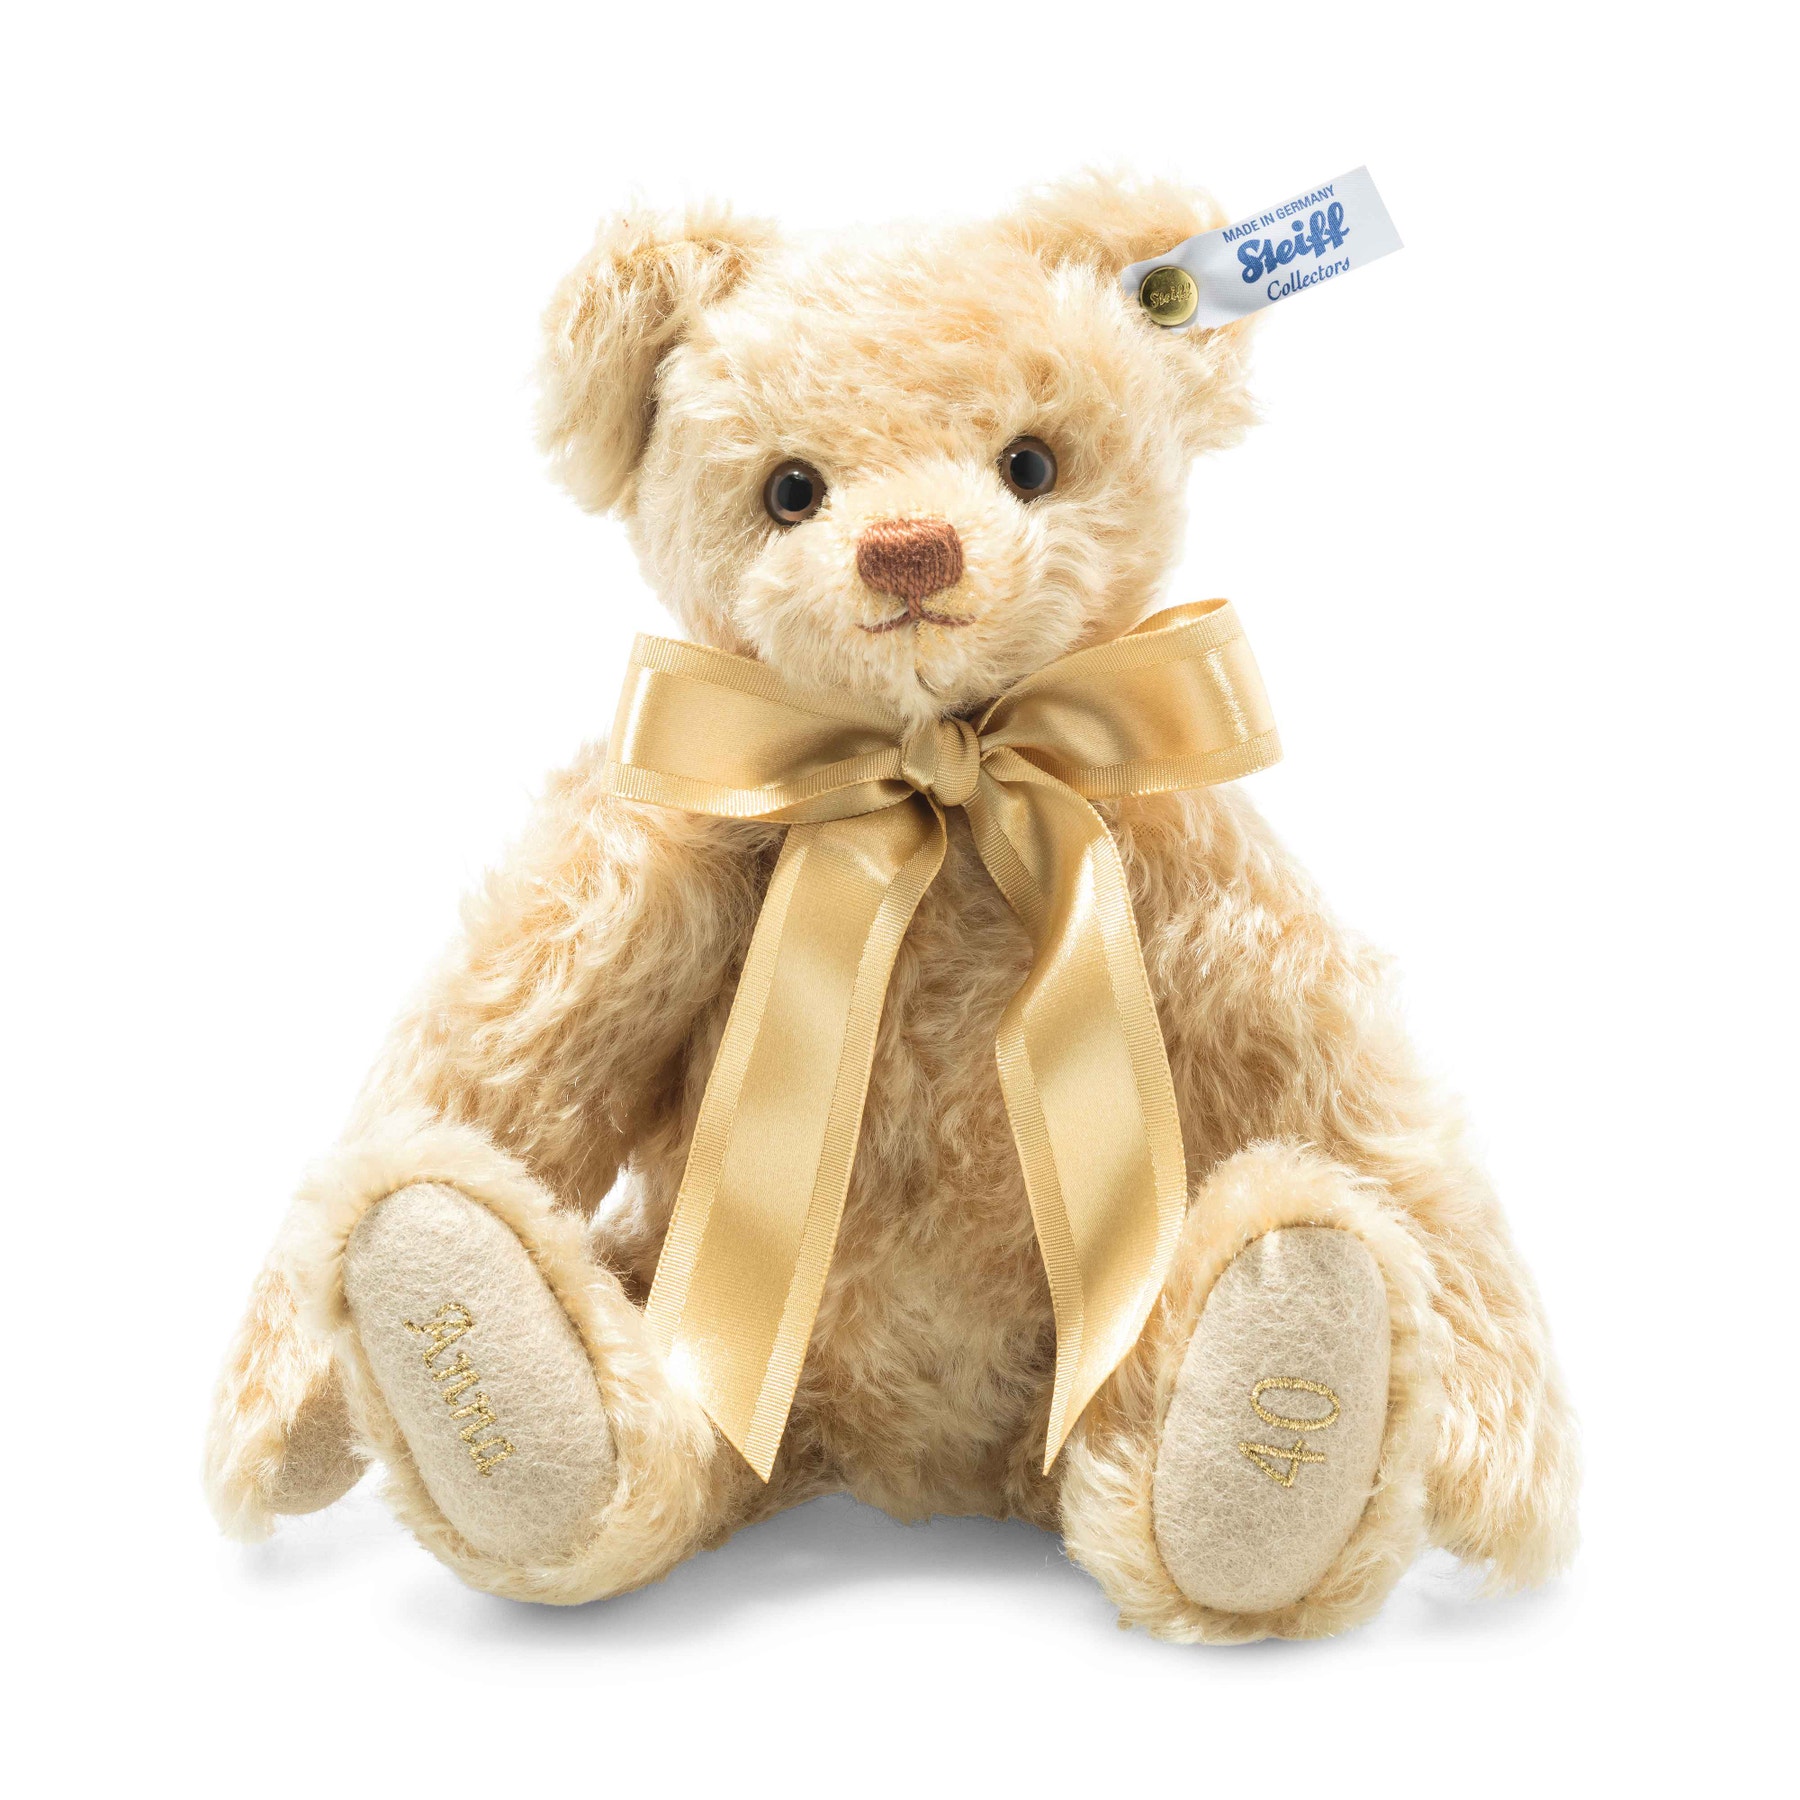 Jubilee Teddy bear